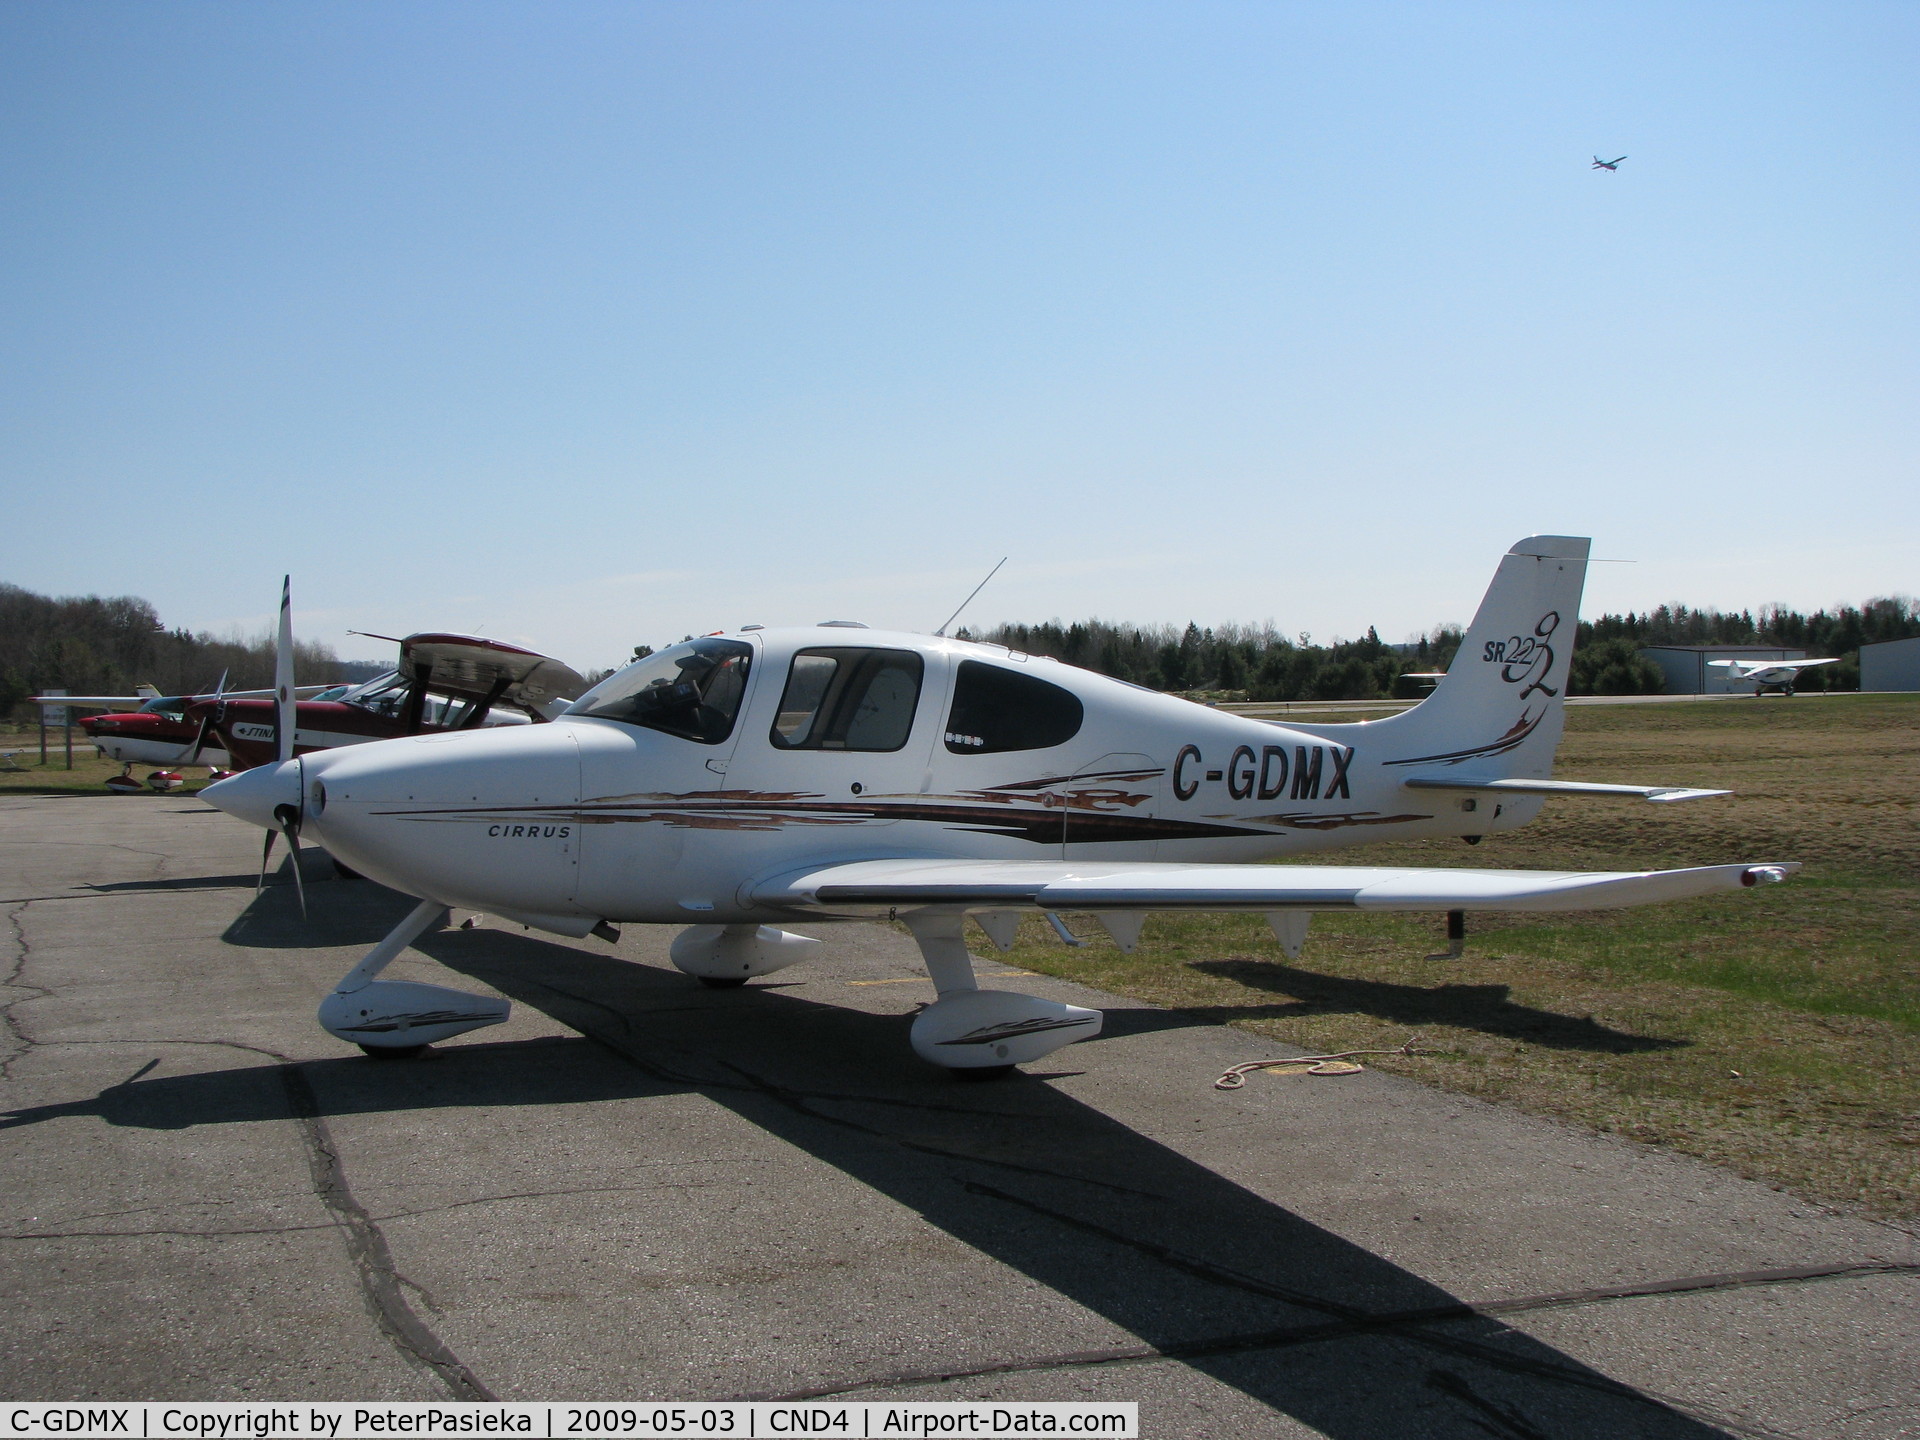 C-GDMX, Cirrus SR22 G2 C/N 1764, @ Haliburton/Stahnope Airport